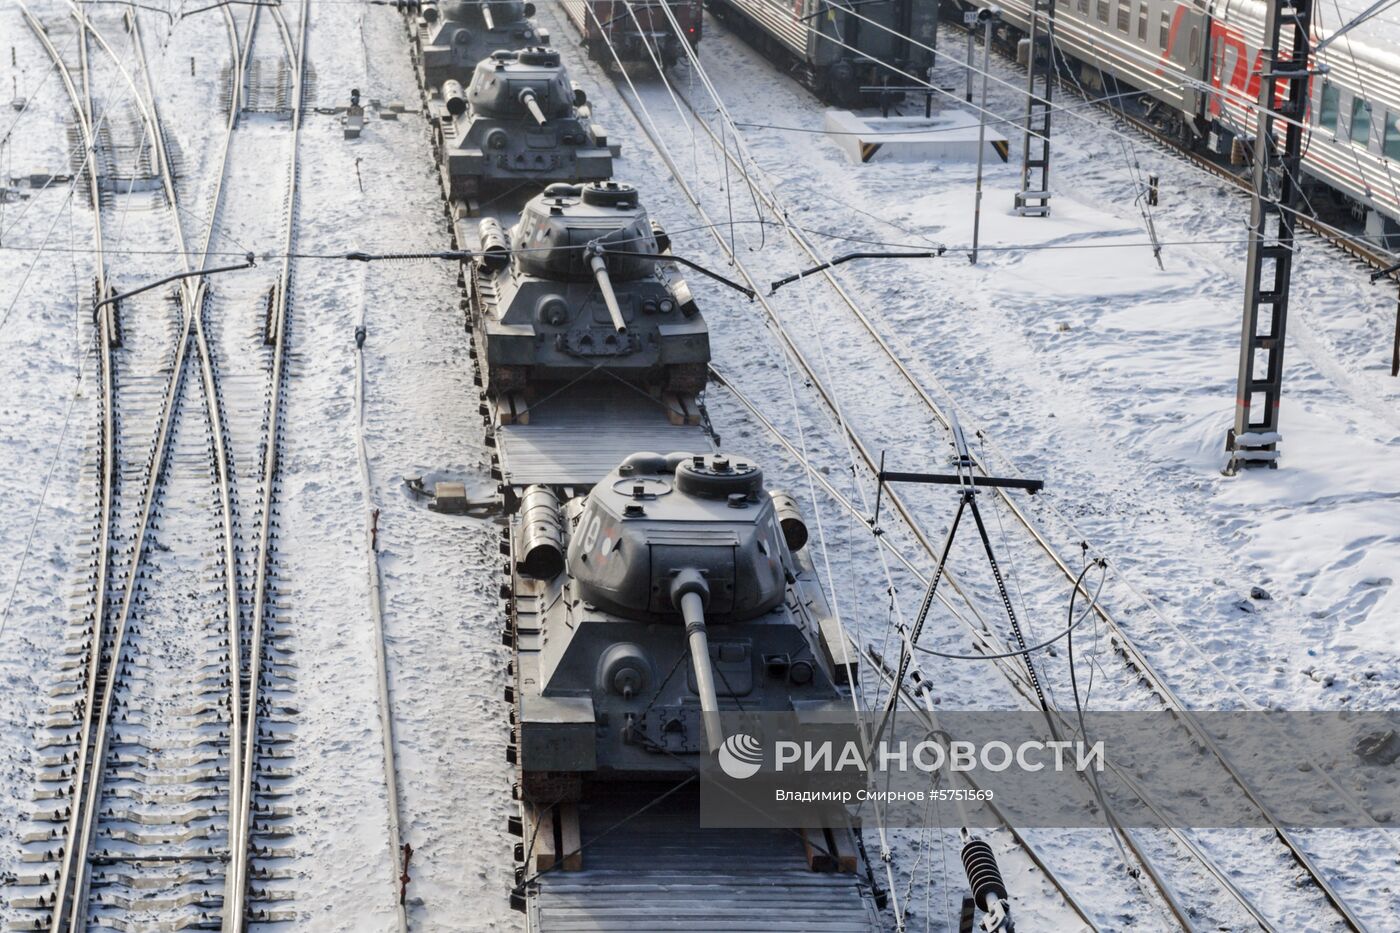 Прибытие эшелона с 30 танками Т-34 в Иркутск